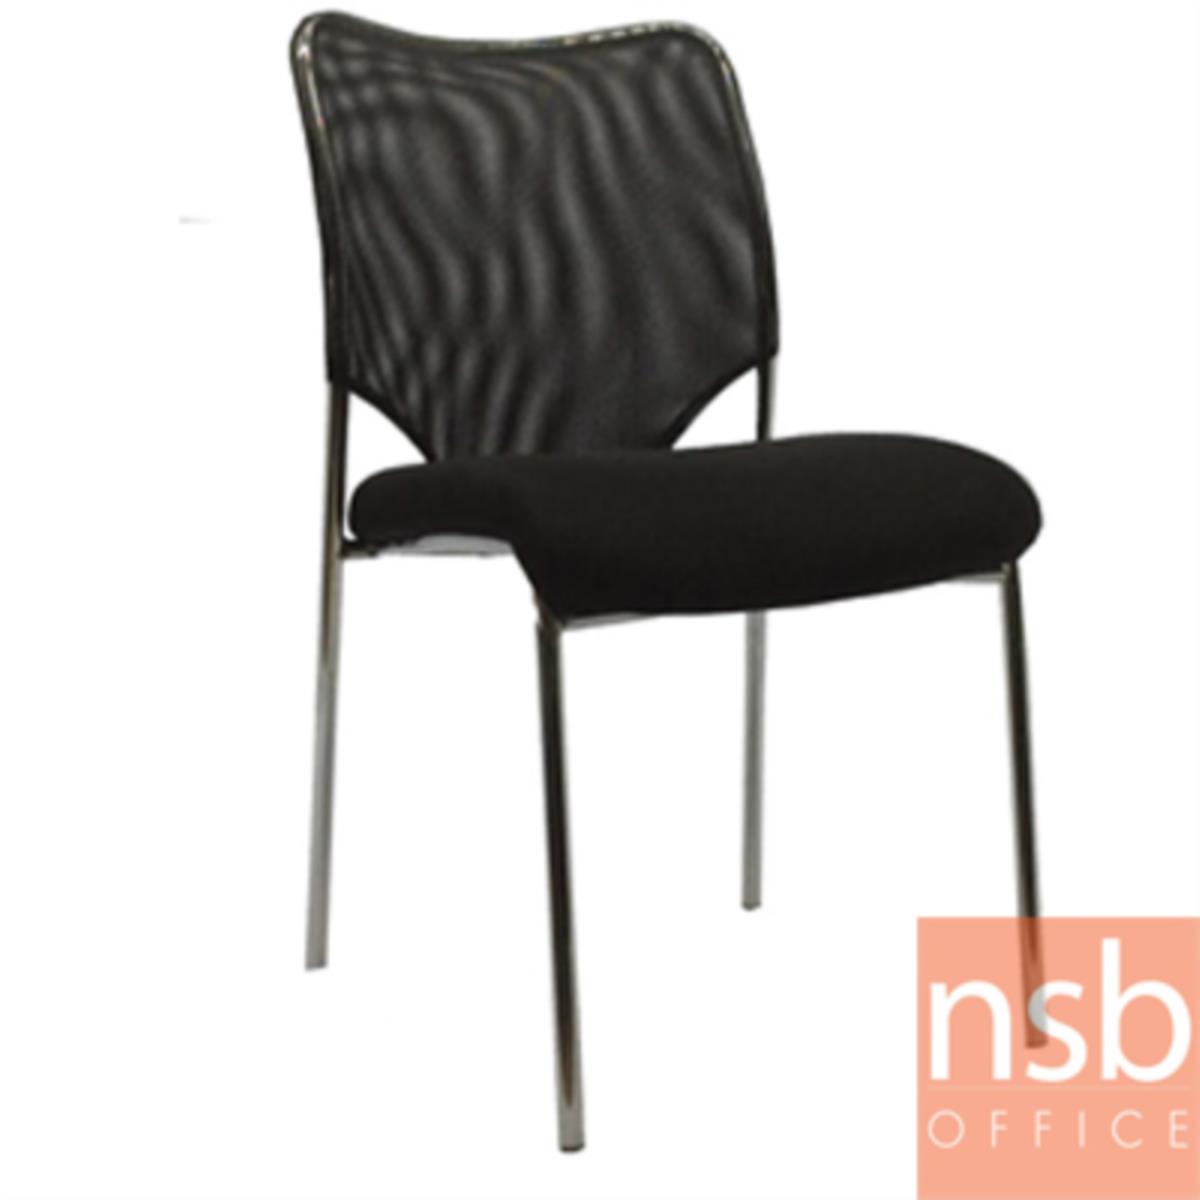 B05A015:เก้าอี้อเนกประสงค์ยูโร  ขนาด 85H cm.  ขาเหล็กชุบโครเมียม